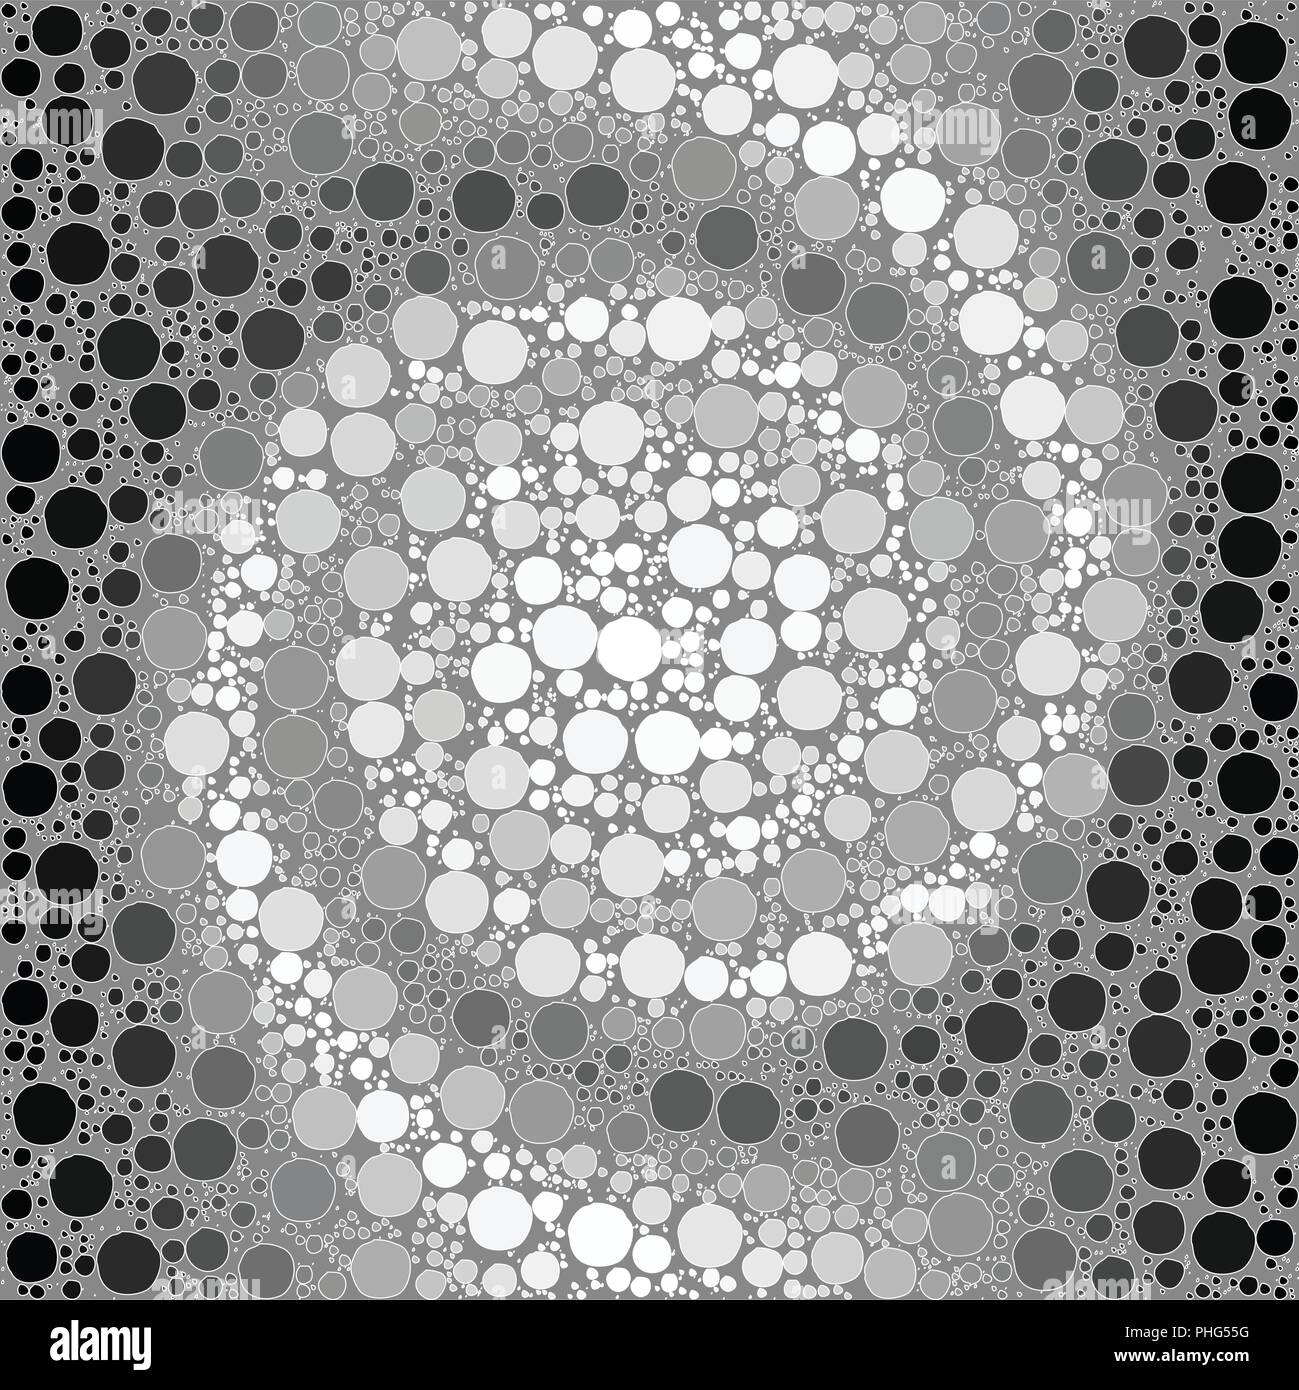 Vector background fait d'une spirale noir et blanc de la pente et de formes rondes ressemblant à des bulles stylisées. Illustration de Vecteur